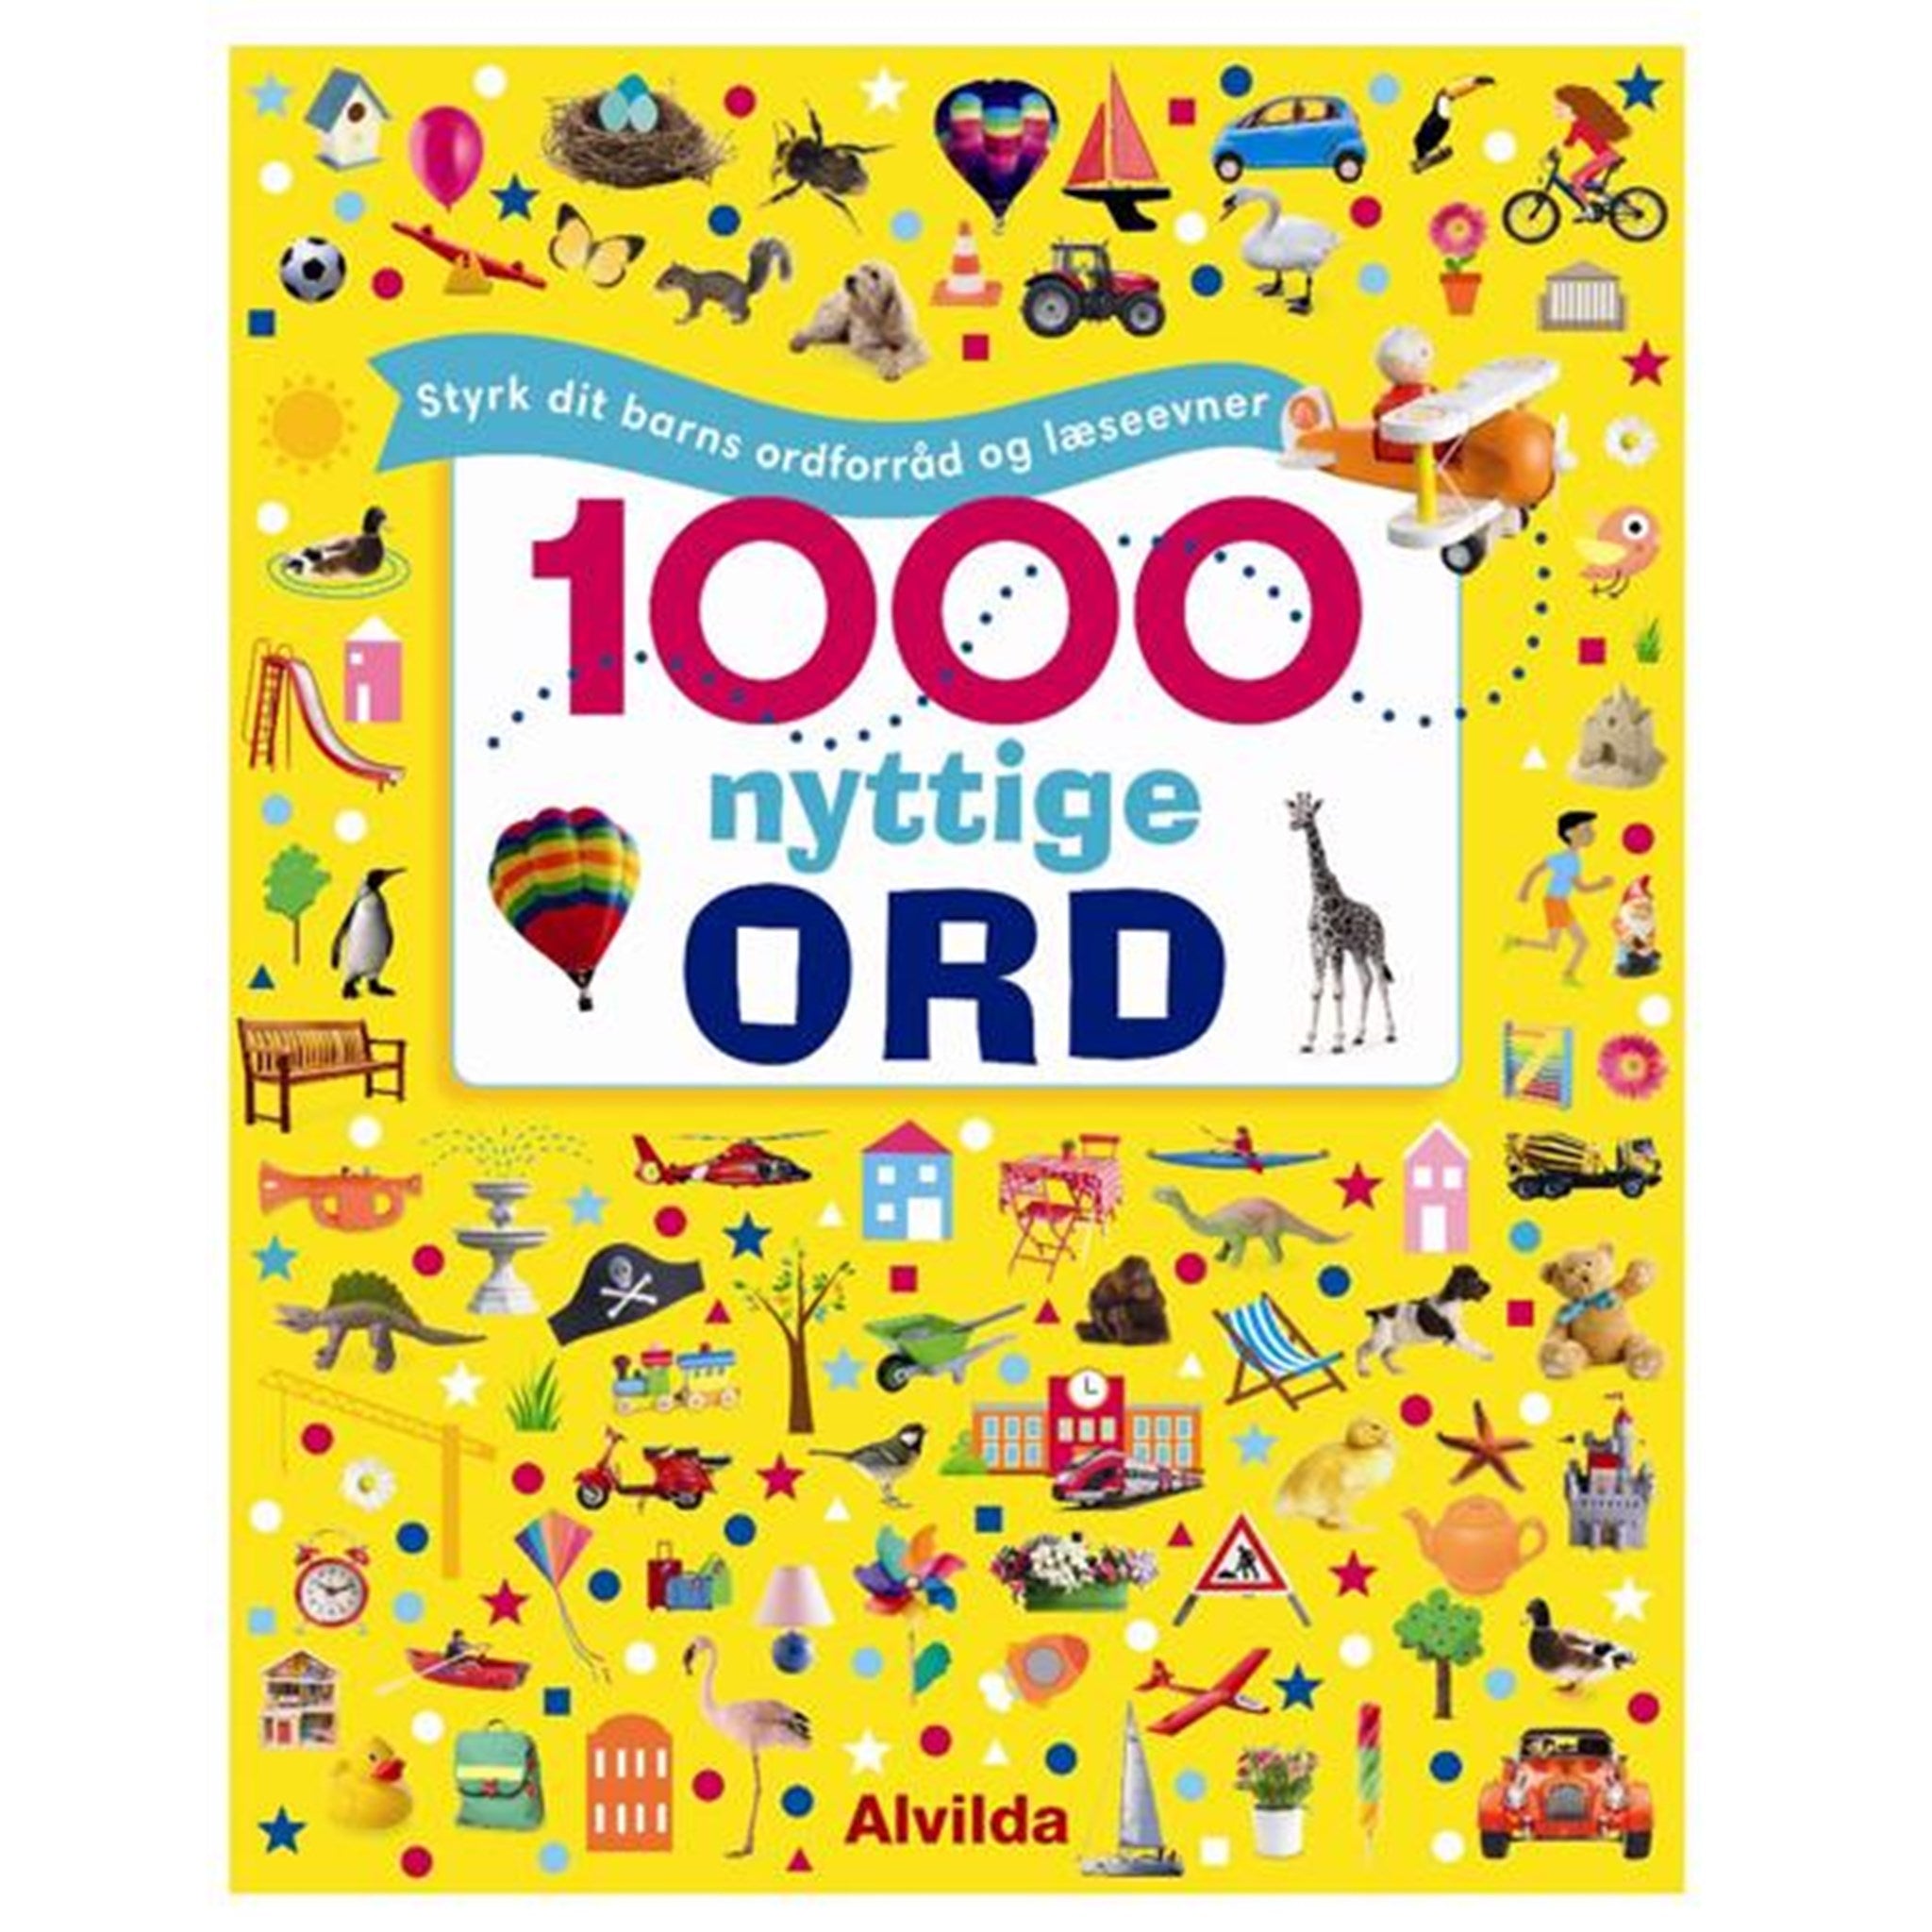 Alvilda 1000 Nyttige Ord - Styrk Dit Barns Ordforråd og Læseevner